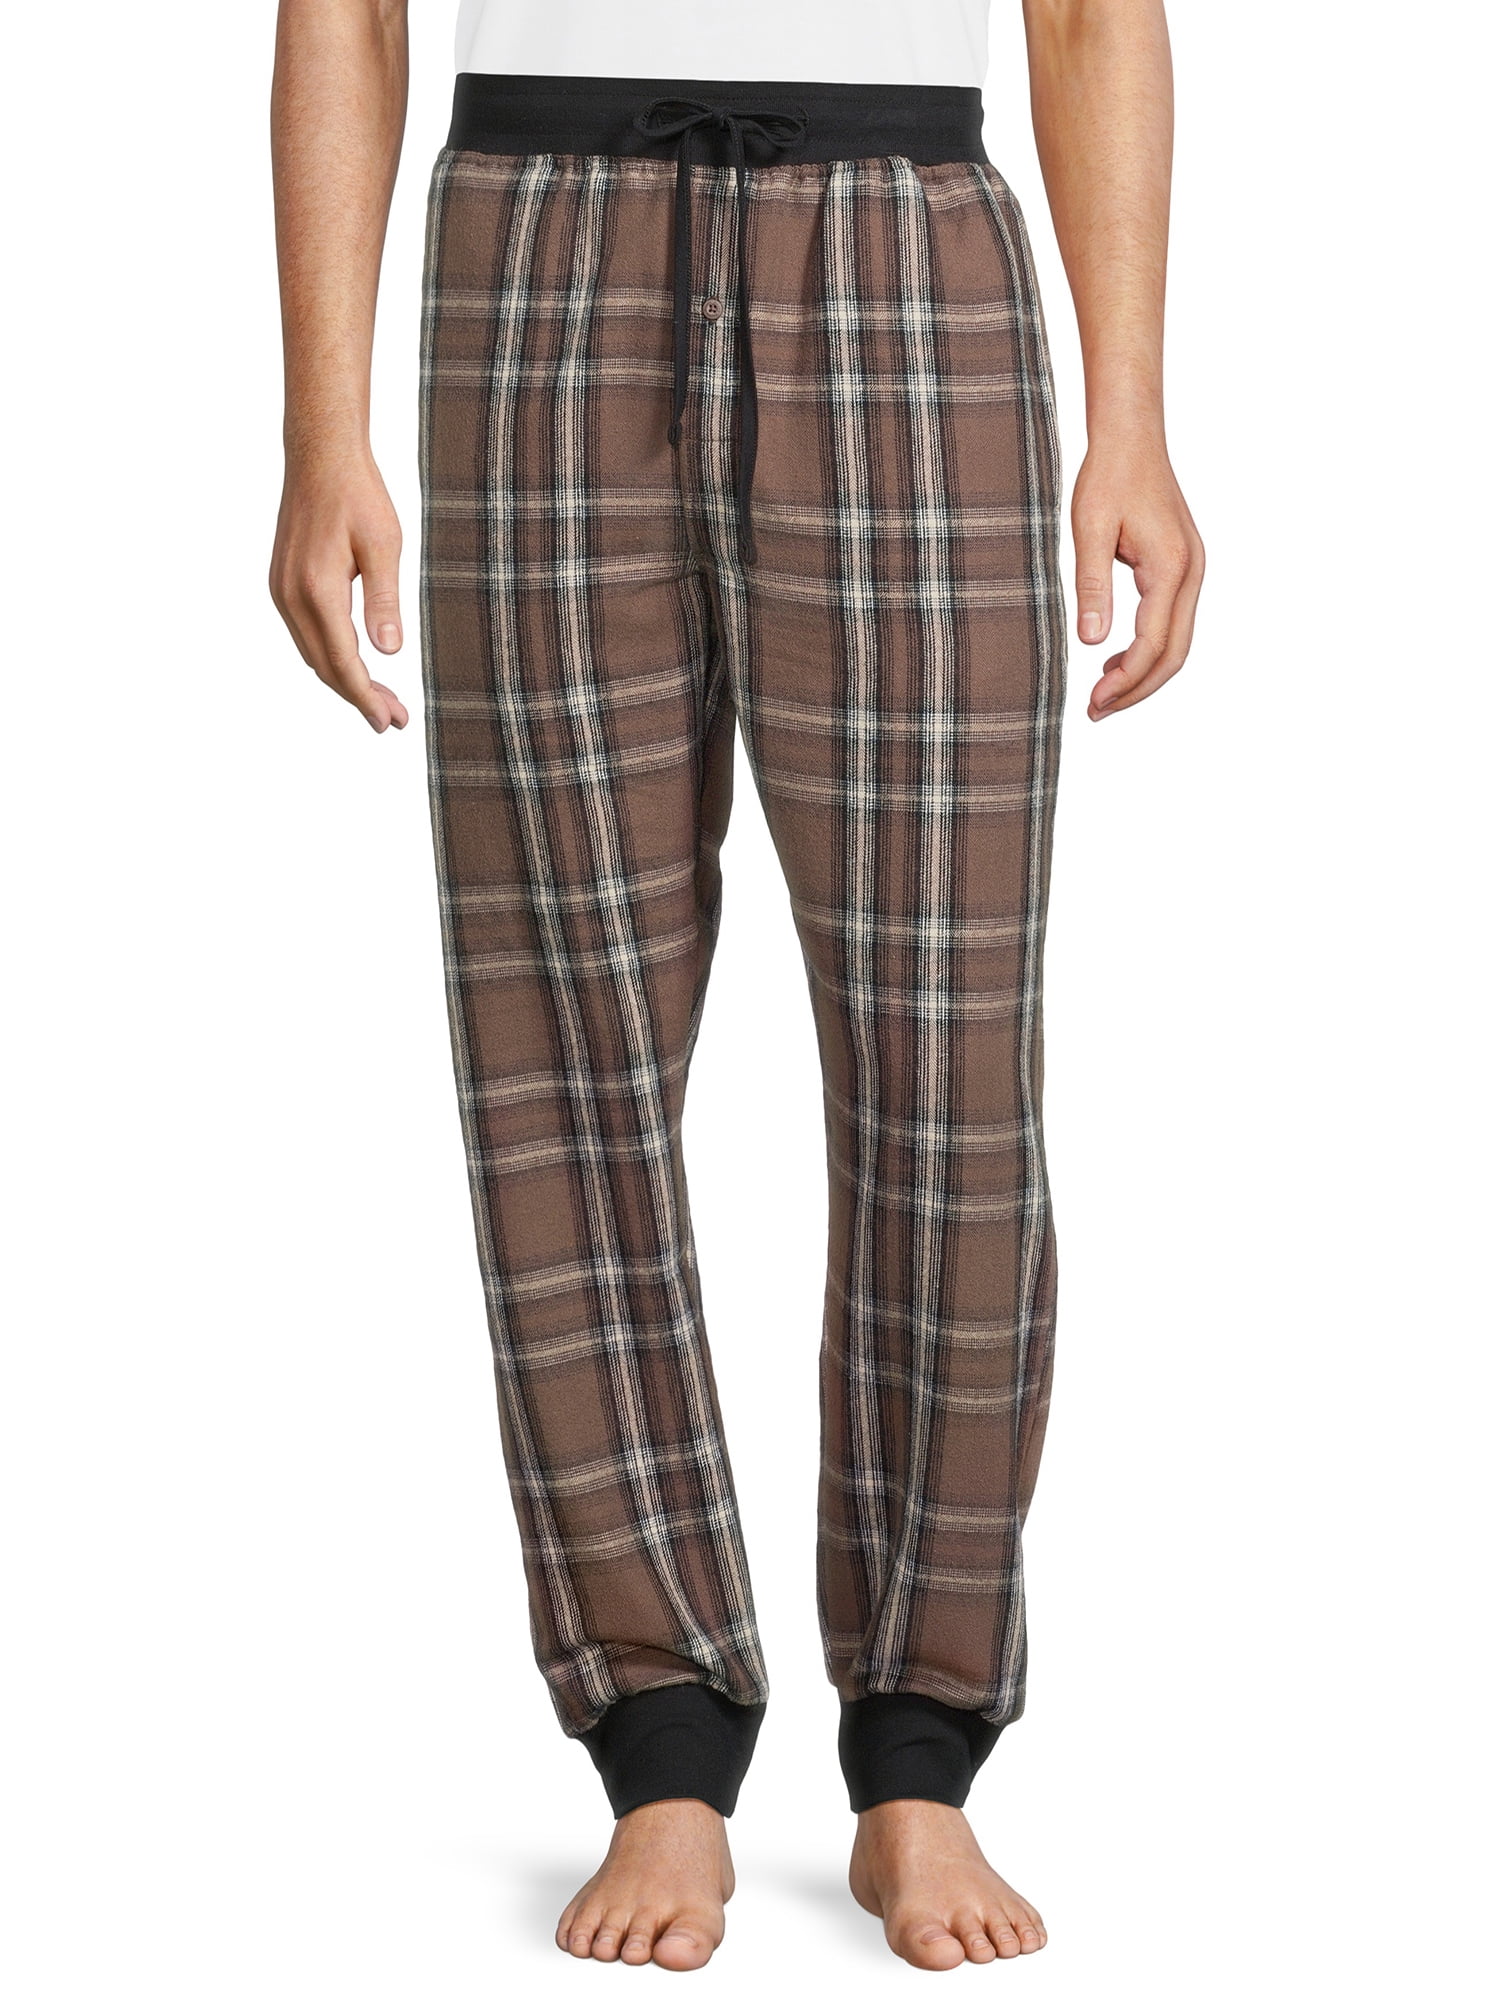 Hanes Originals Men's Soft Flannel Joggers, Sizes S-2XL - Walmart.com